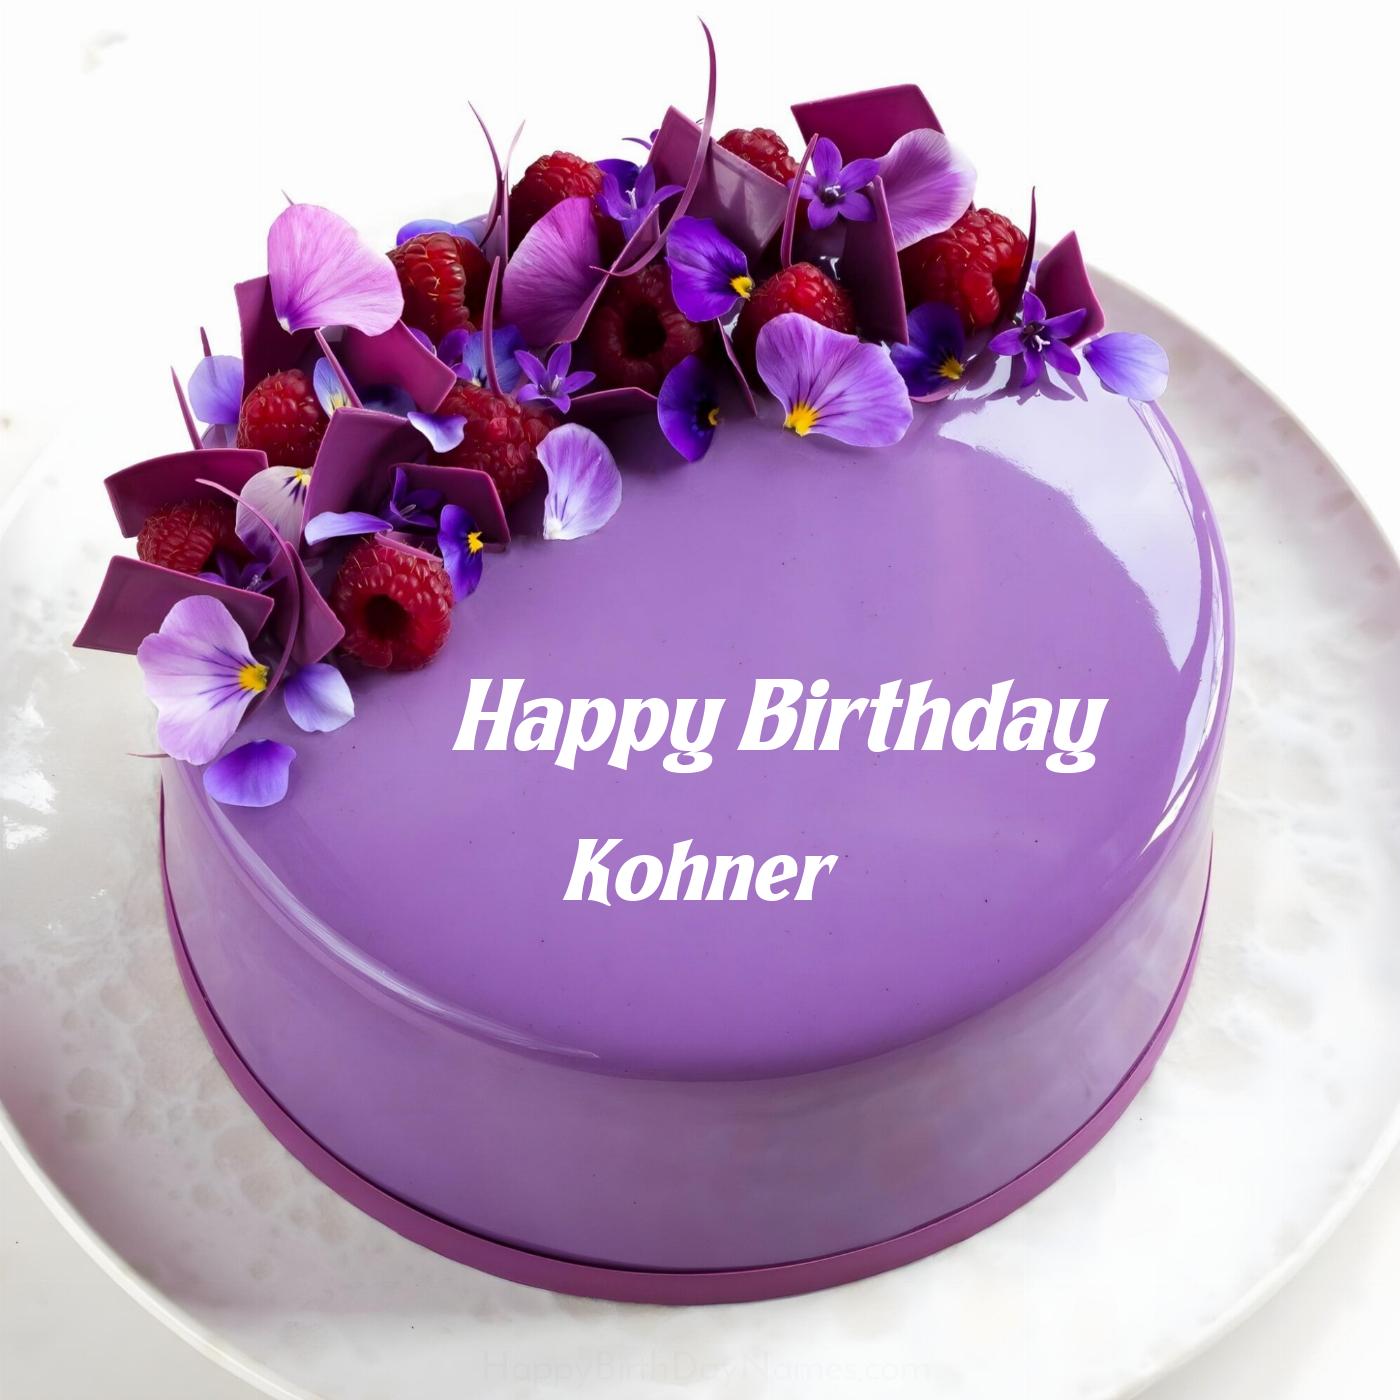 Happy Birthday Kohner Violet Raspberry Cake